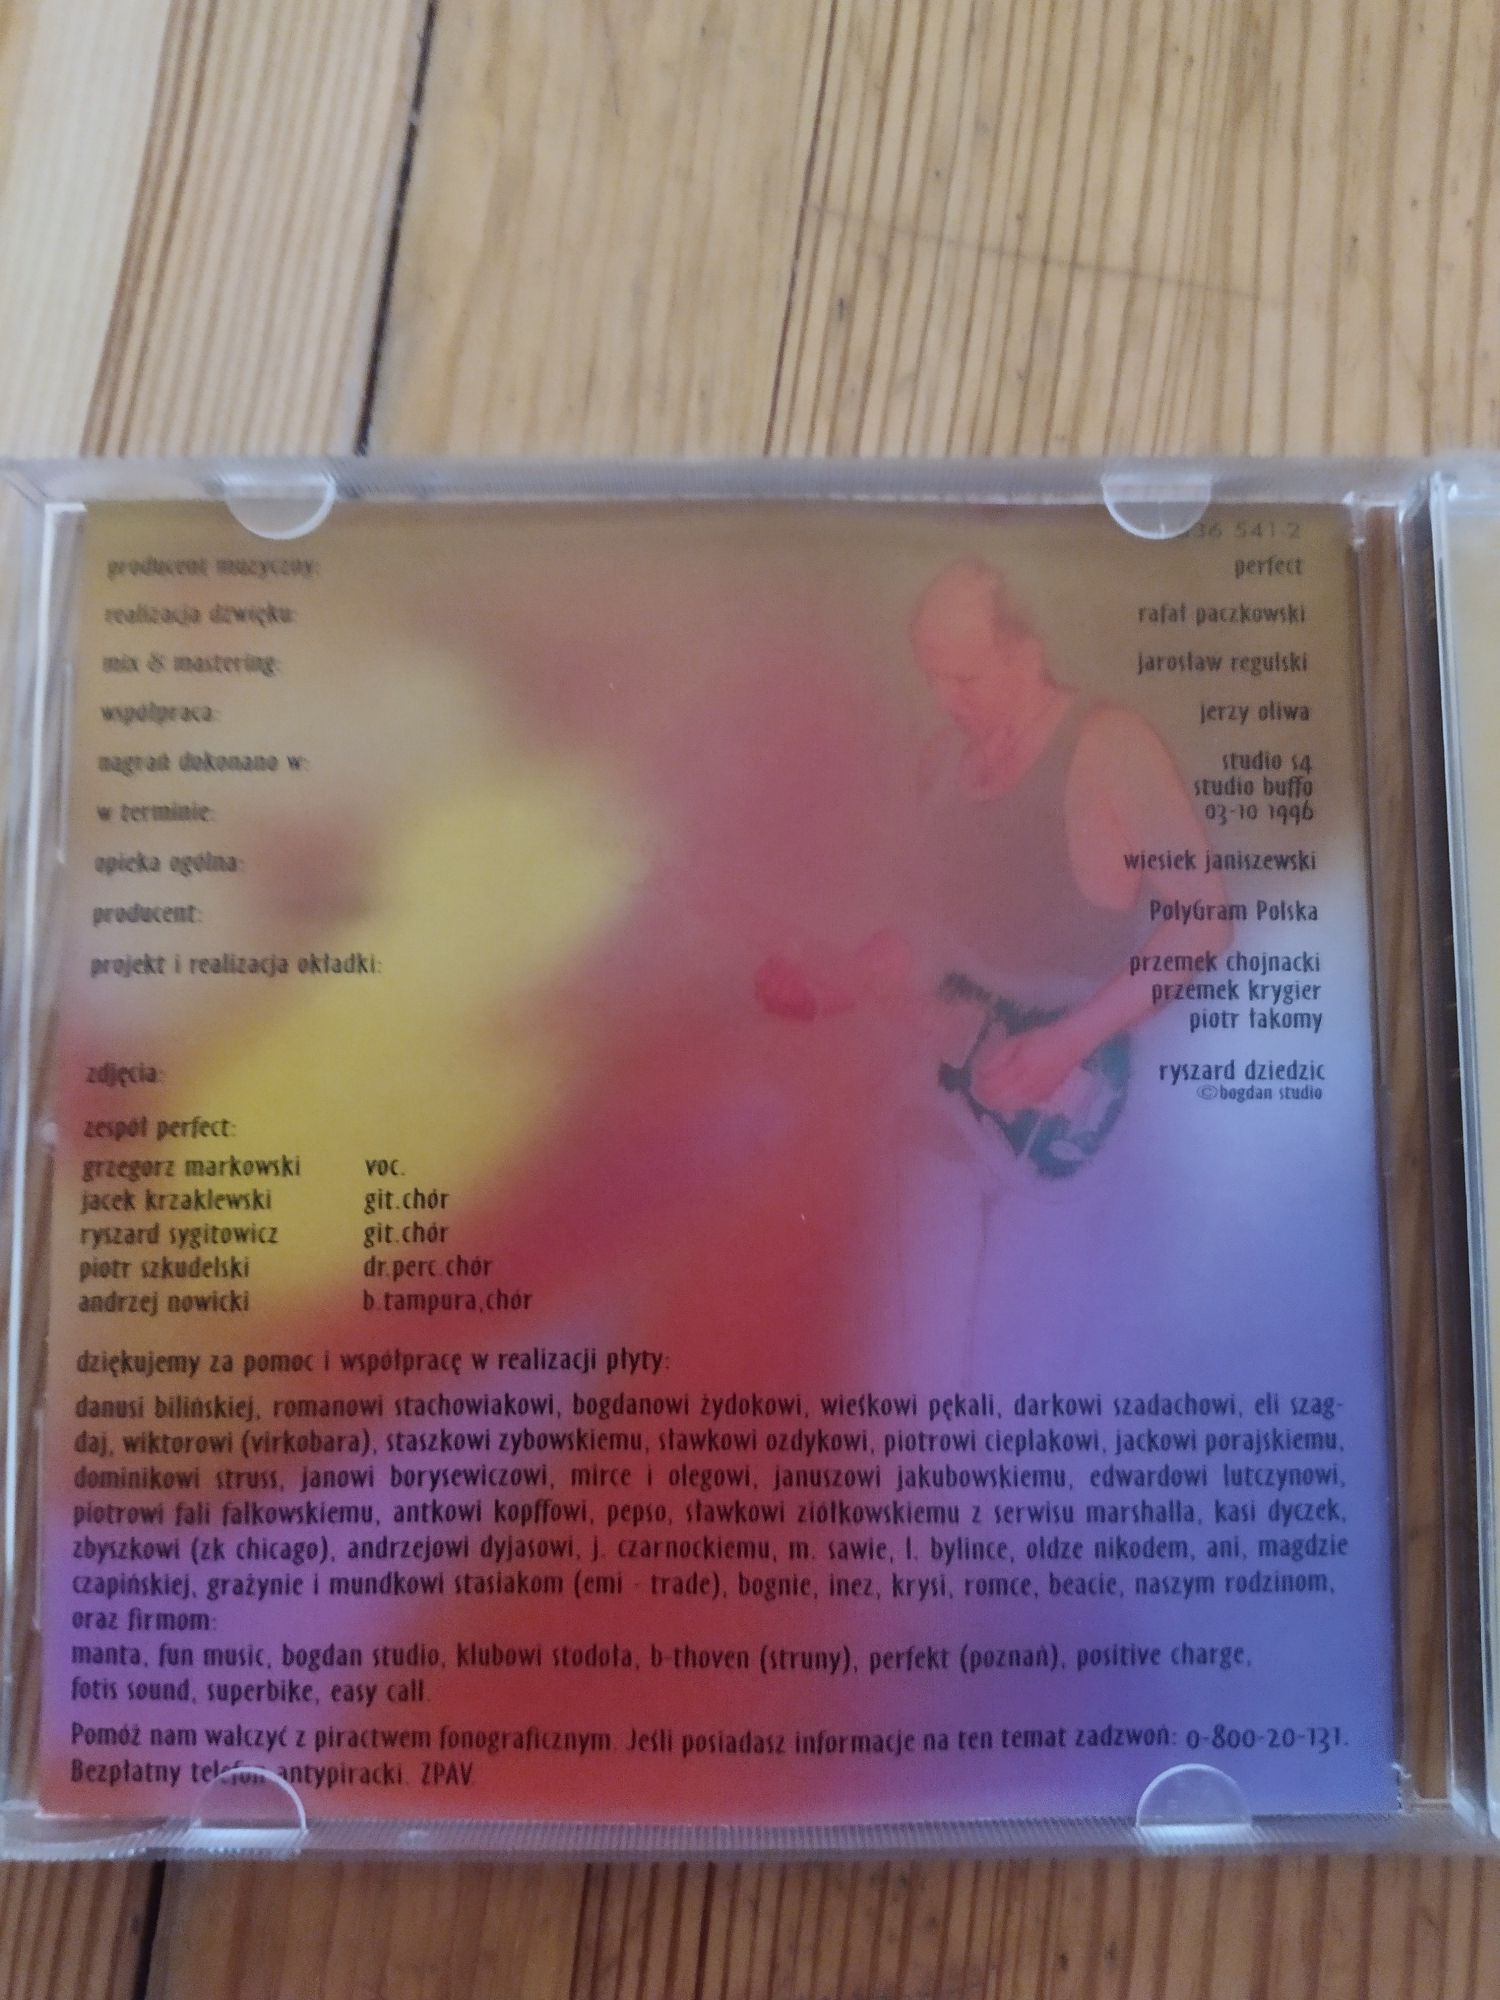 Perfect Geny CD z 1997 roku